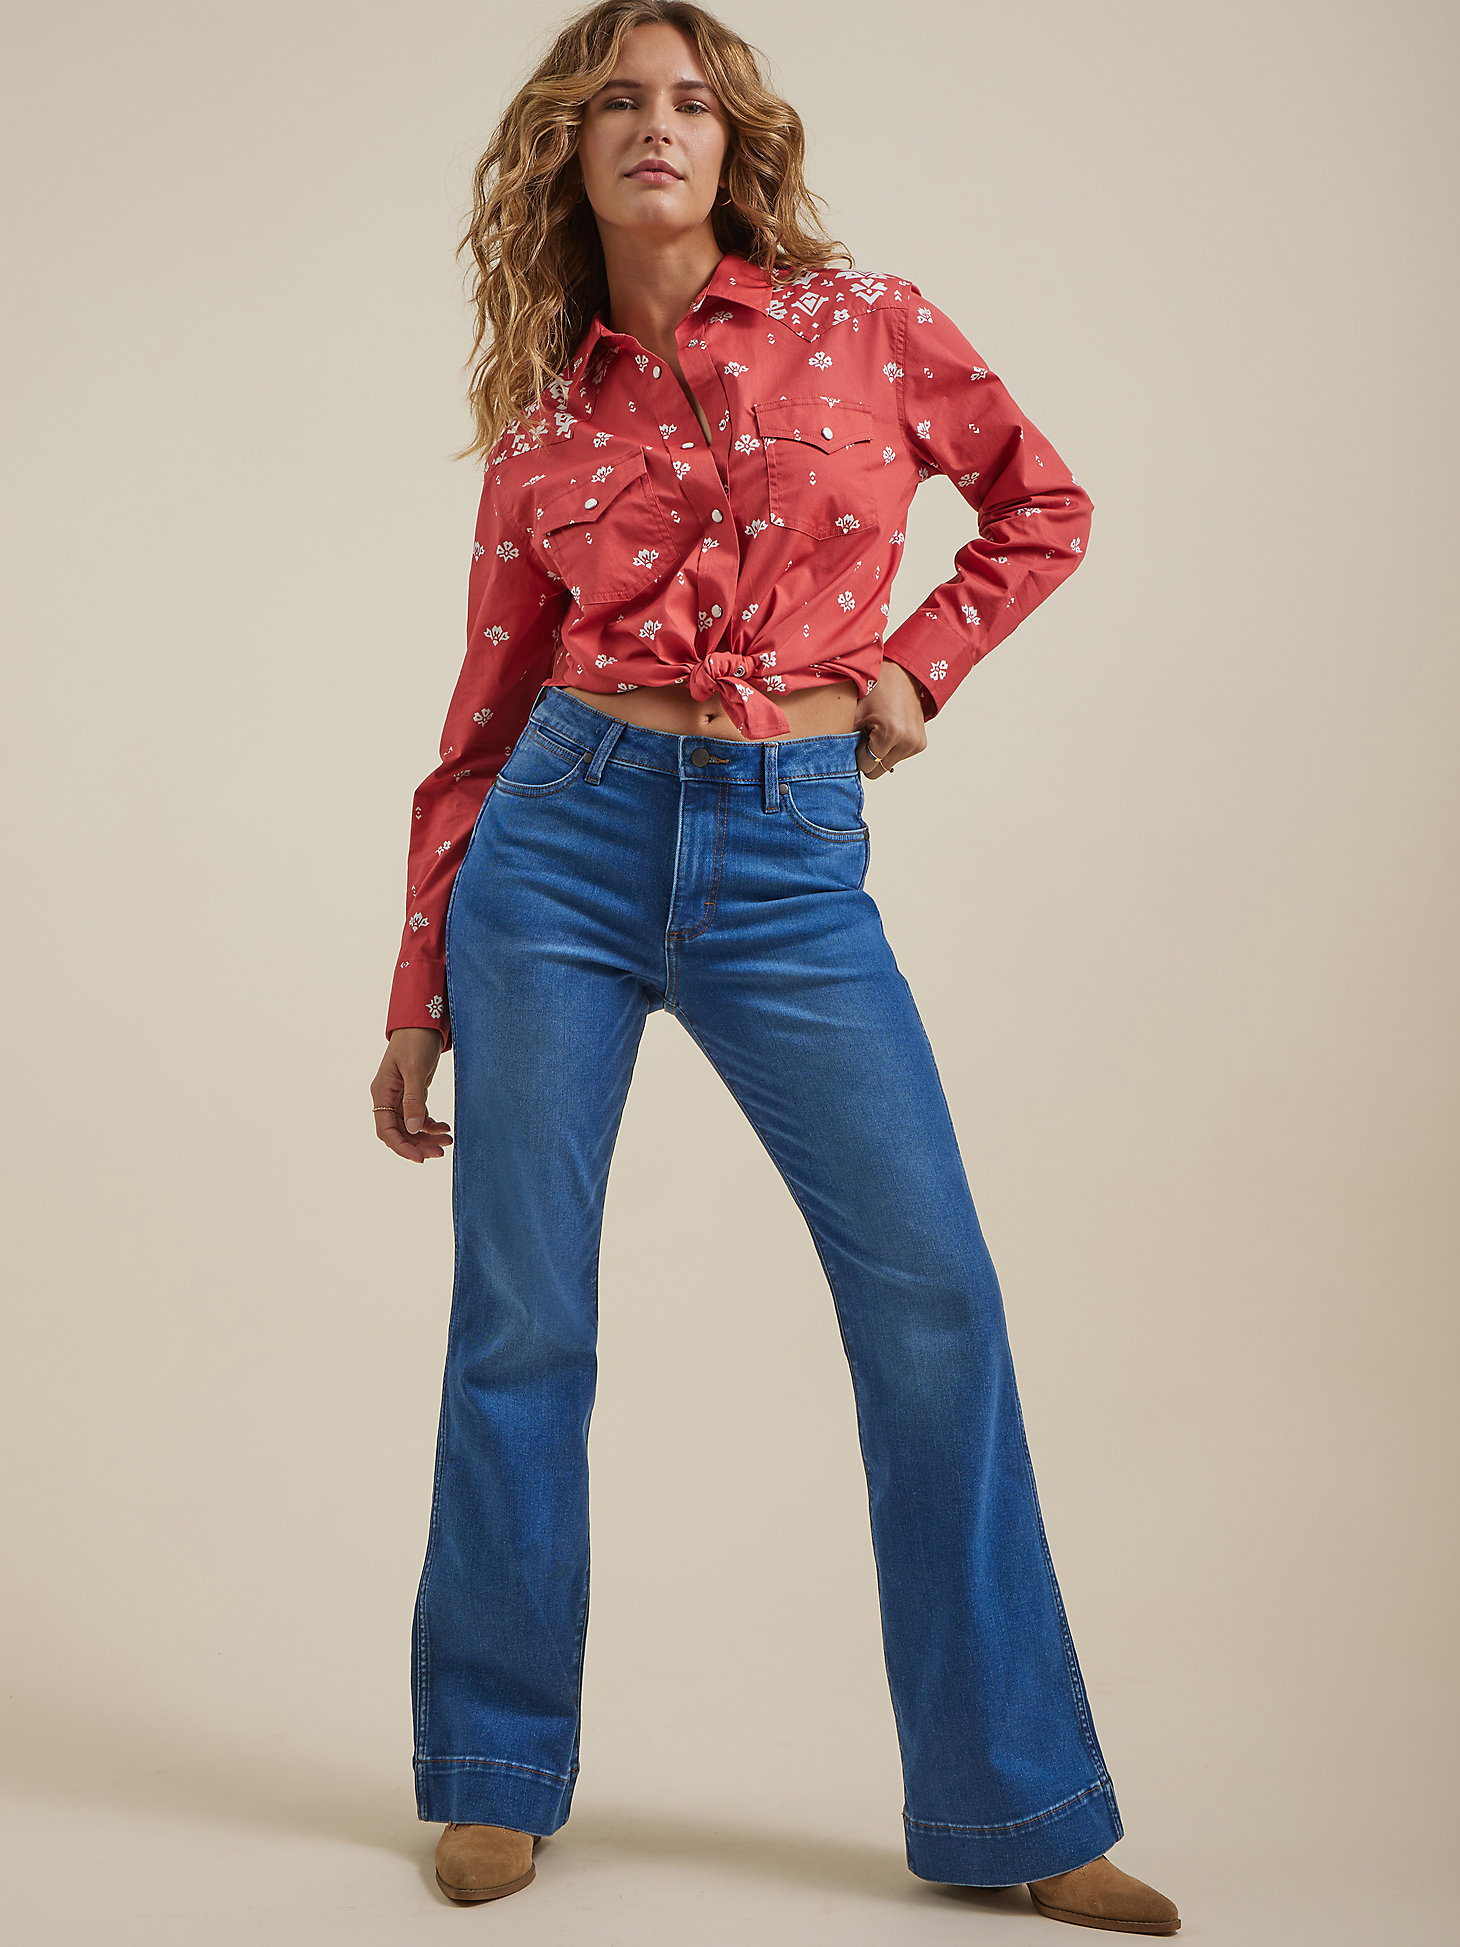 Women's Wrangler Retro® High Rise Trouser Jean in Emily alternative view 4